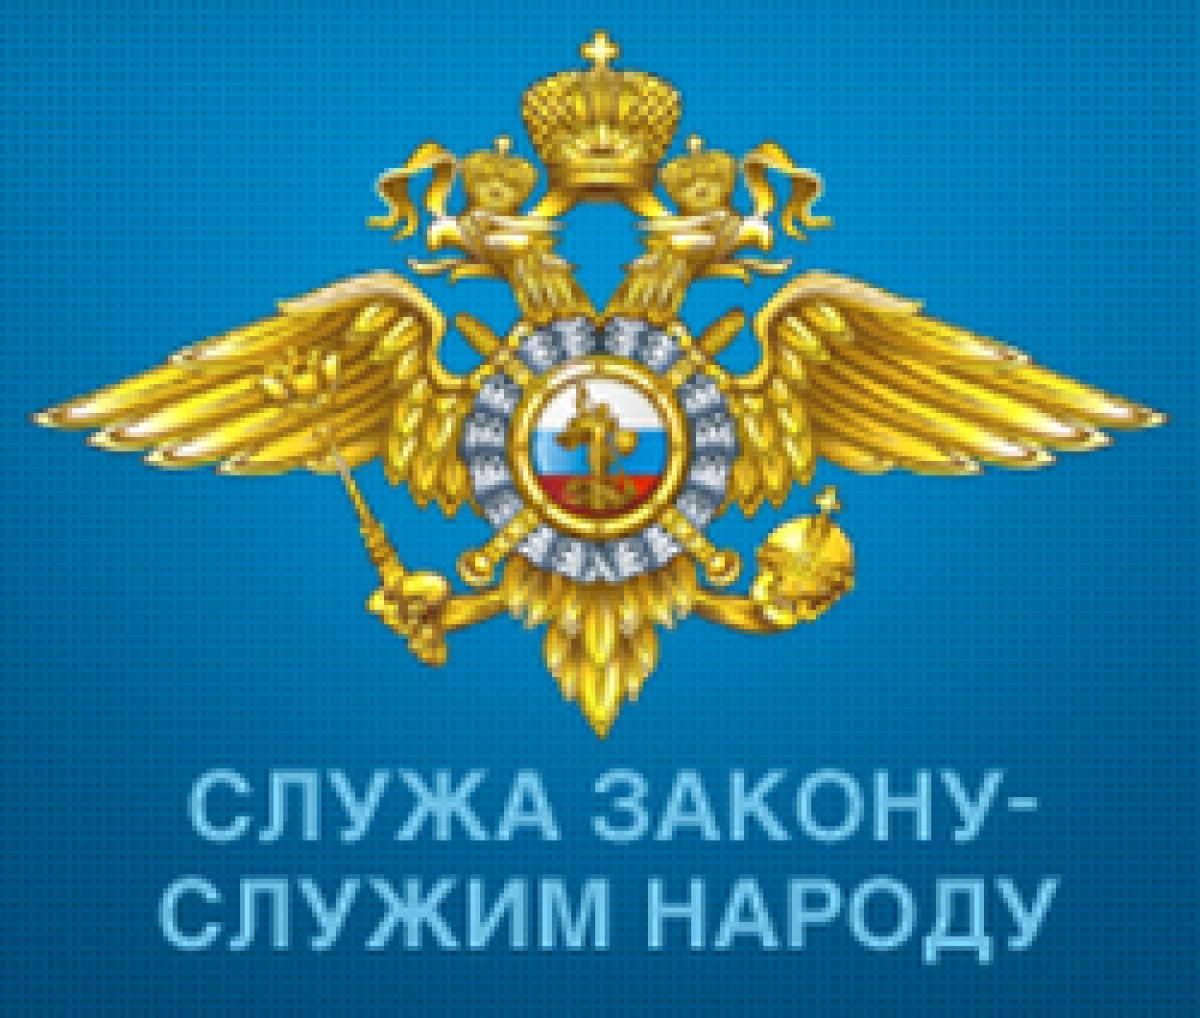 В ГУ МВД России по Московской области подведены итоги деятельности за 2015 год